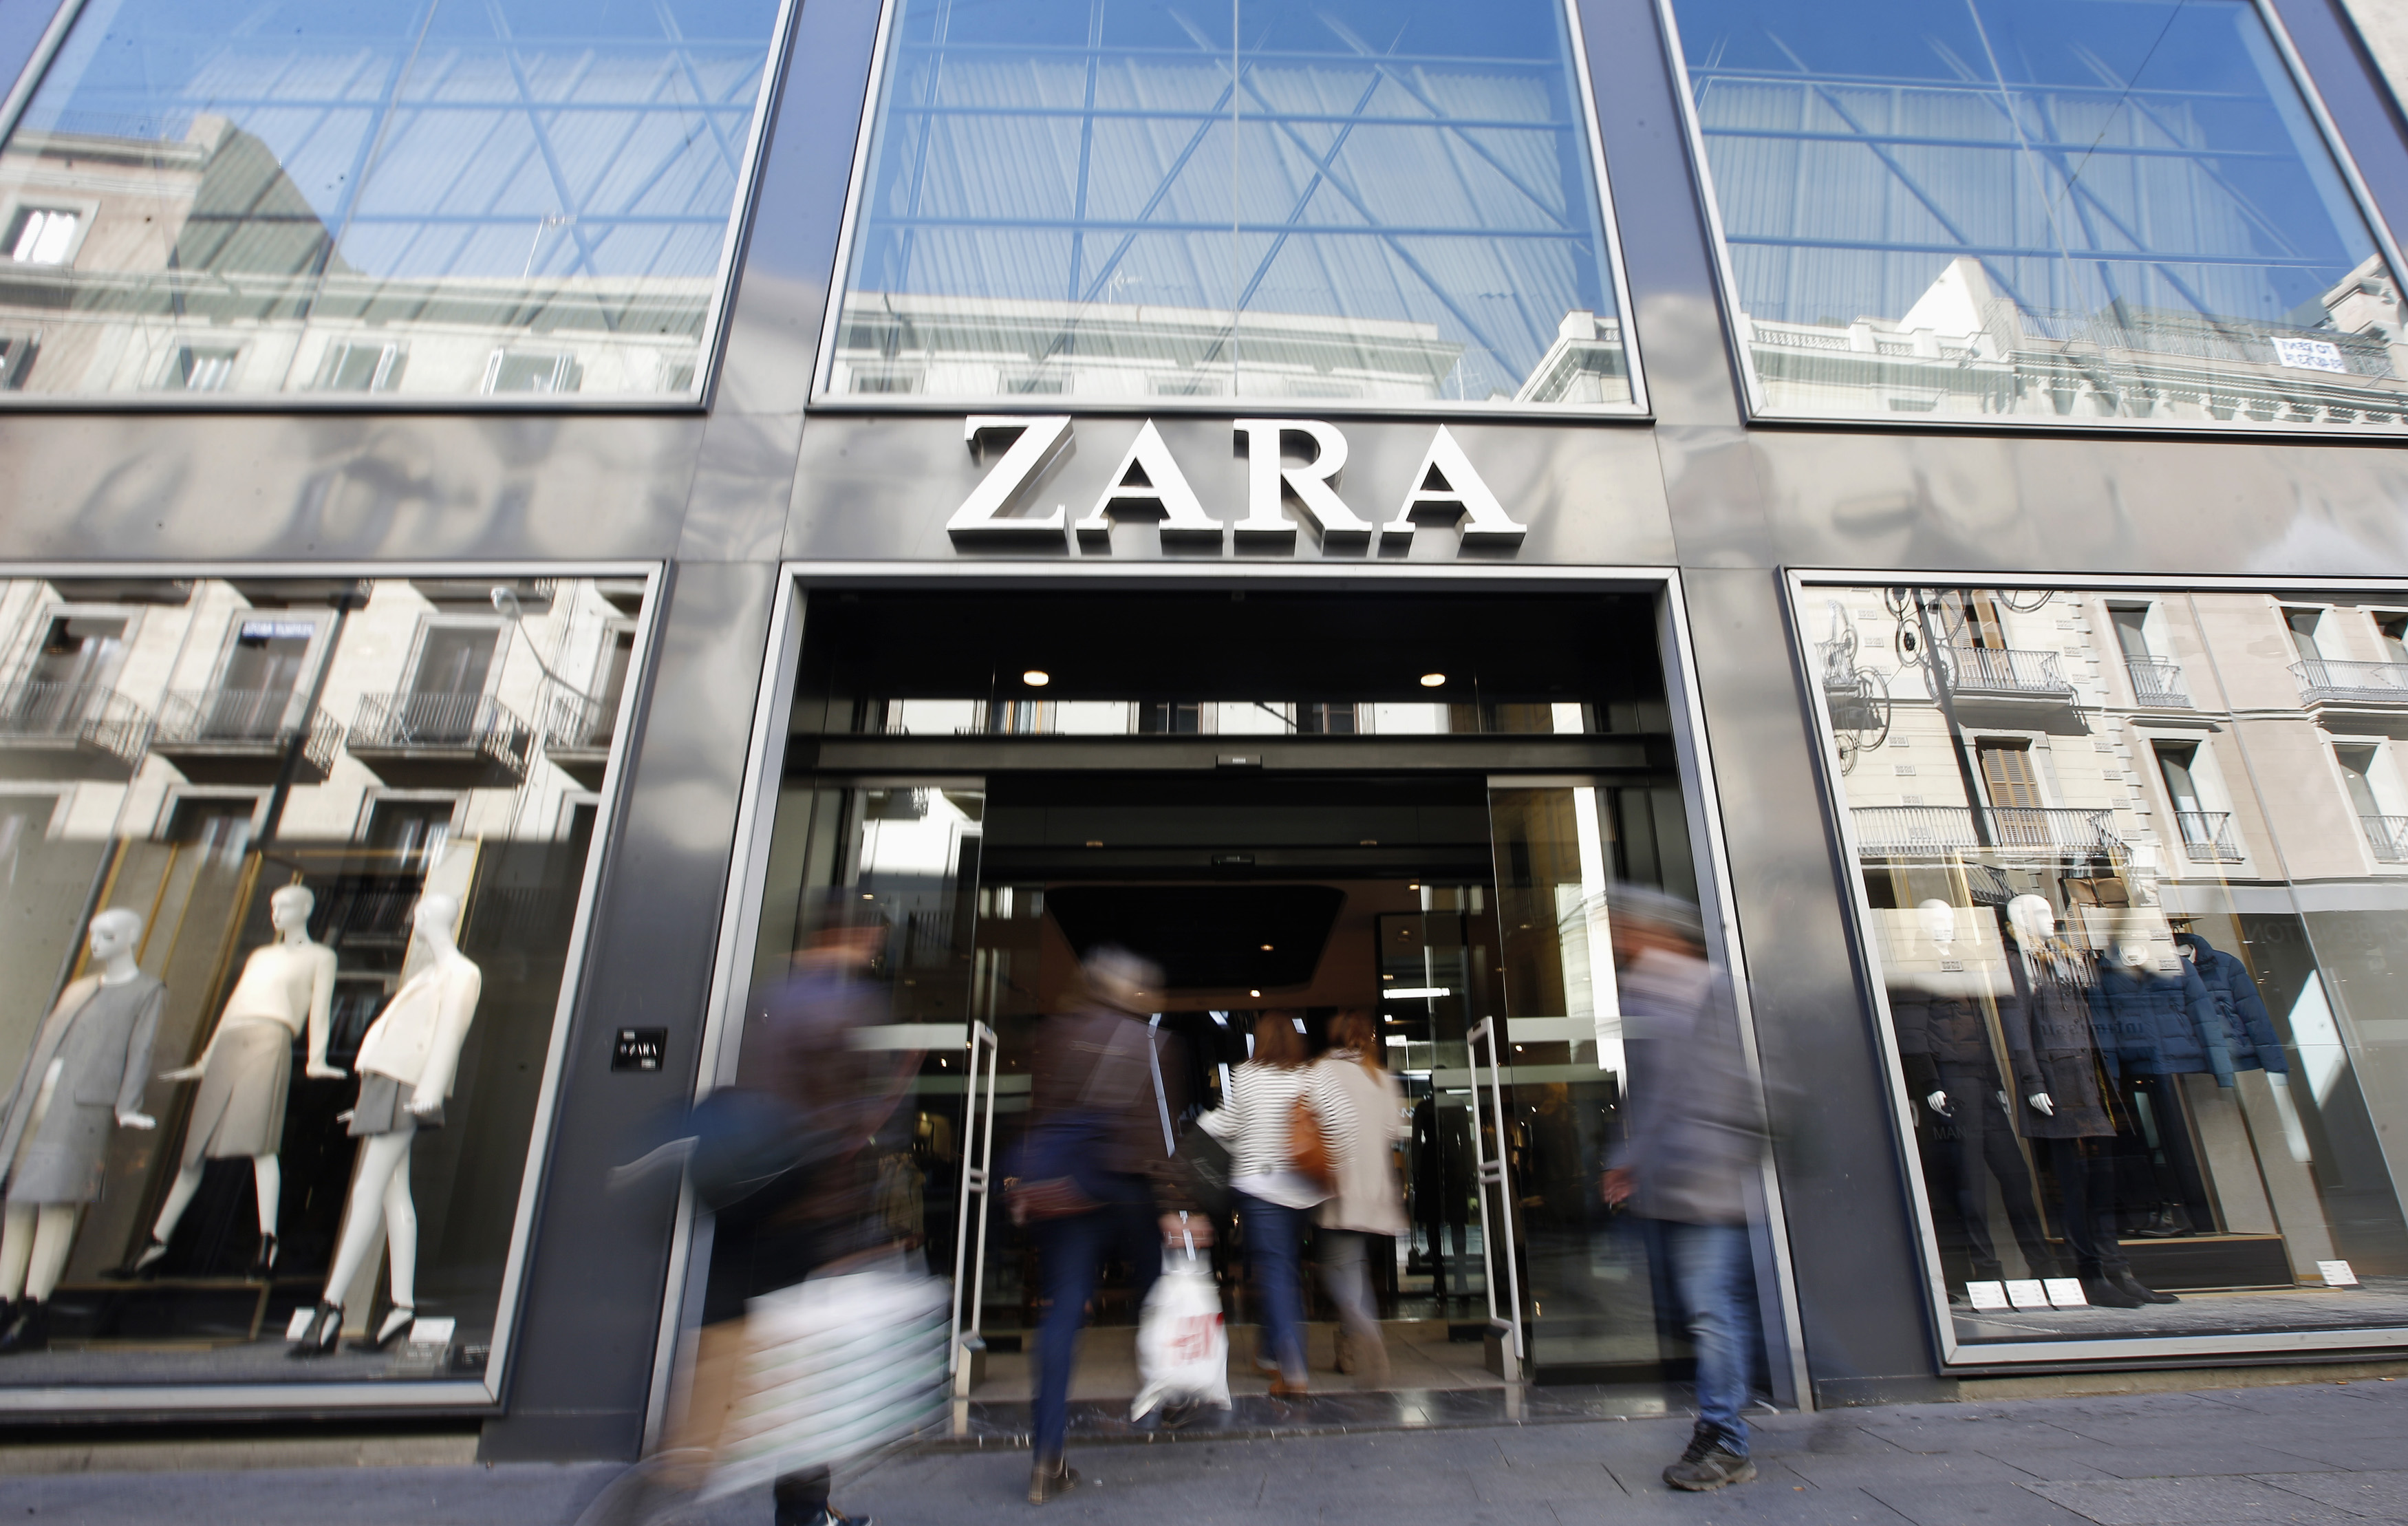 Big Data: ¿Qué esconden las alarmas de Zara? Mucho más que un sistema  antirrobo, Economía